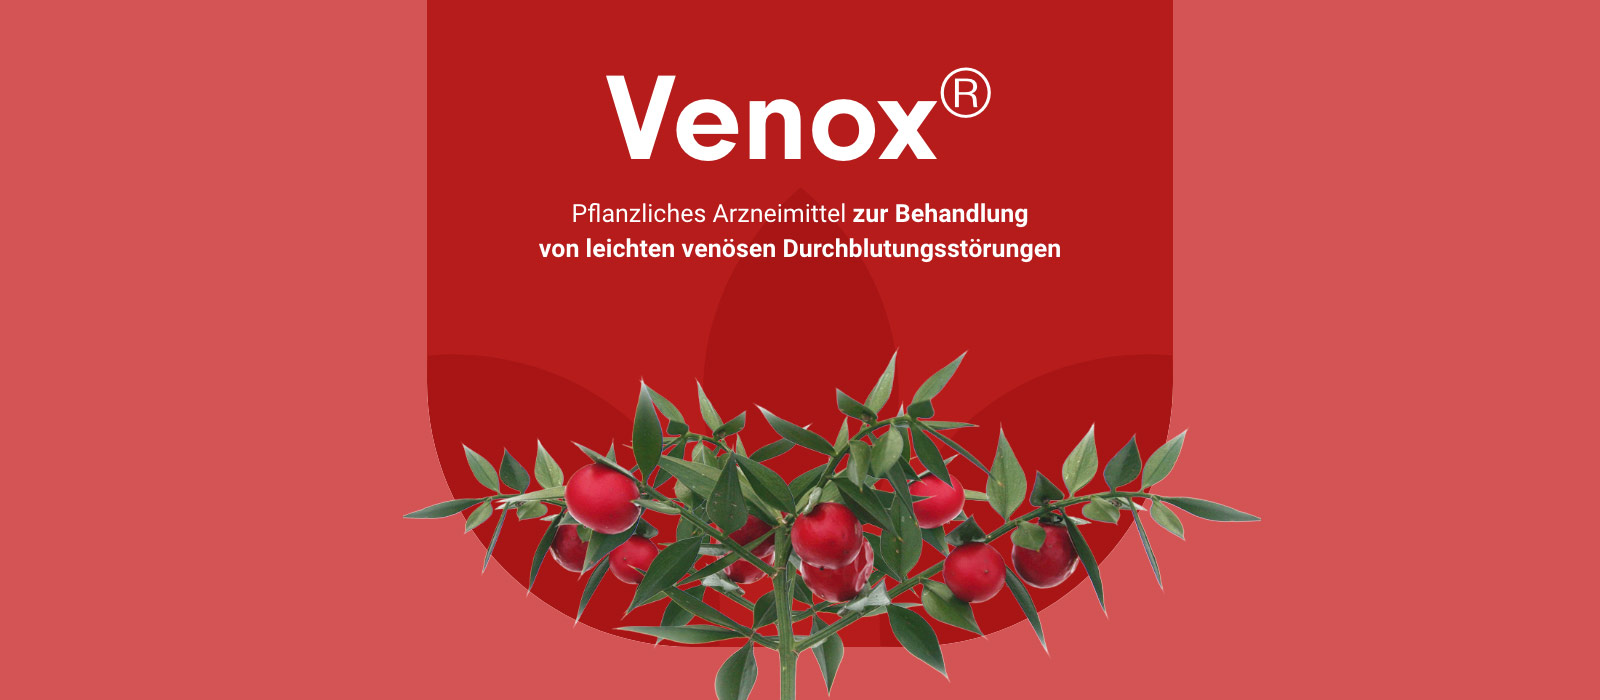 Venox® - Pflanzliches Arzneimittel zur Behandlung von leichten venösen Durchblutungsstörungen